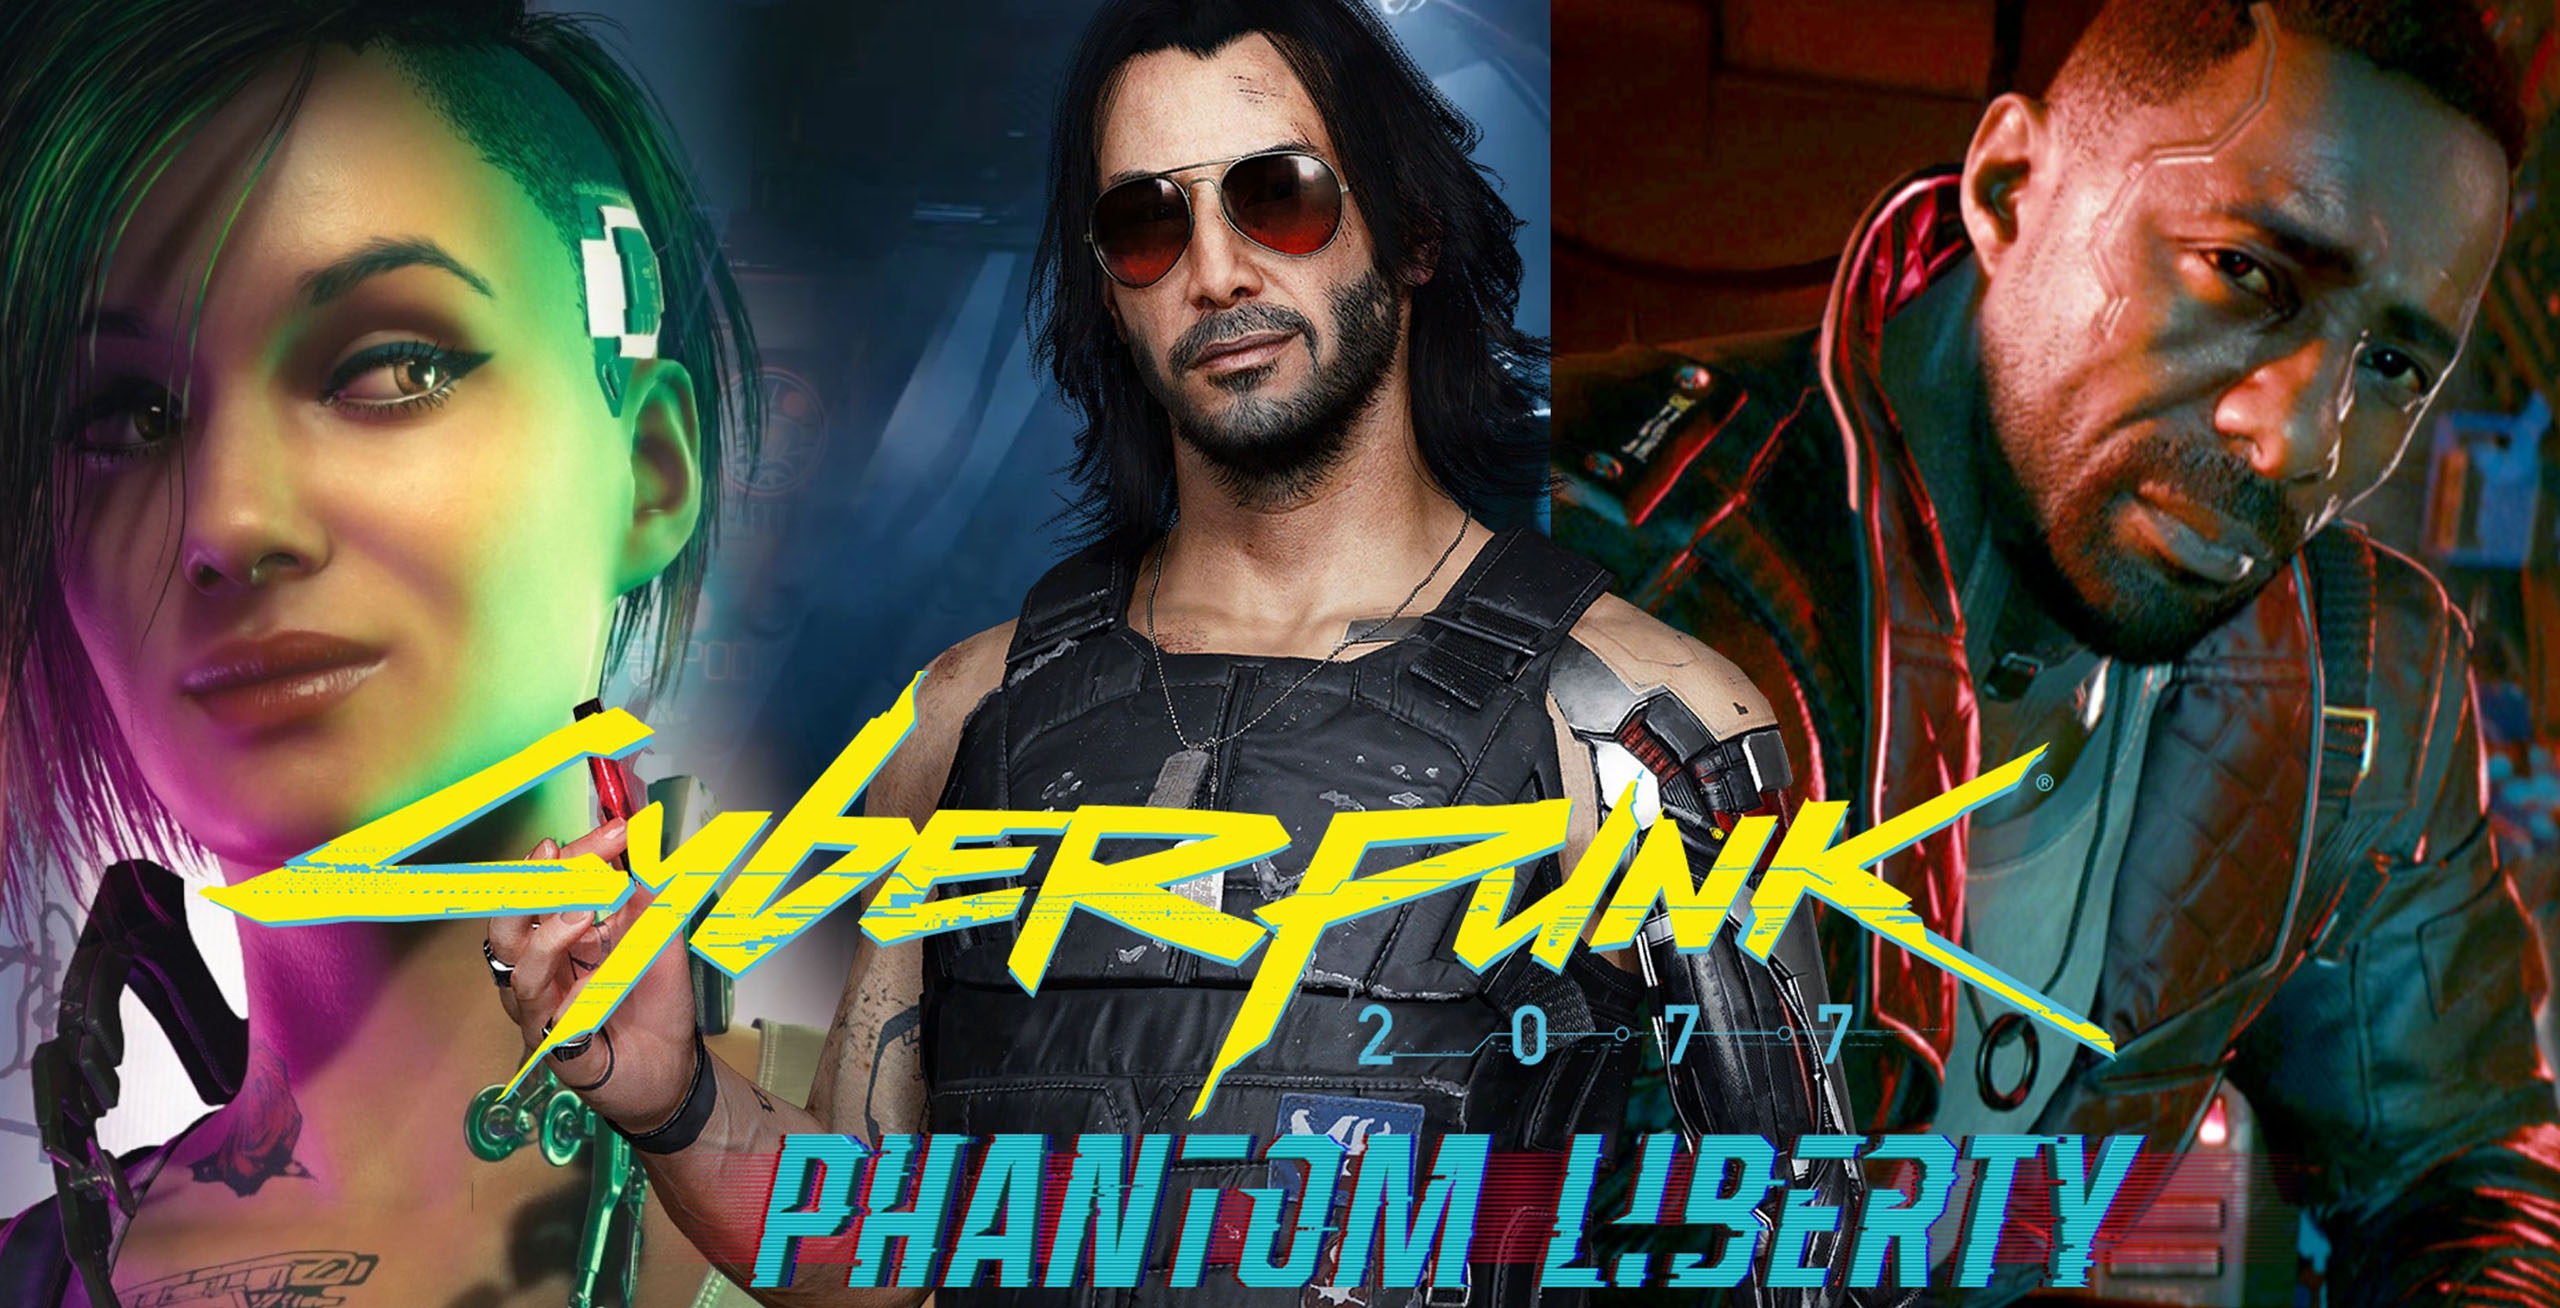 Küberpunk 2077: Phantom Liberty praktiline tegevus: suurepärane futuristlik spioonipõnevik